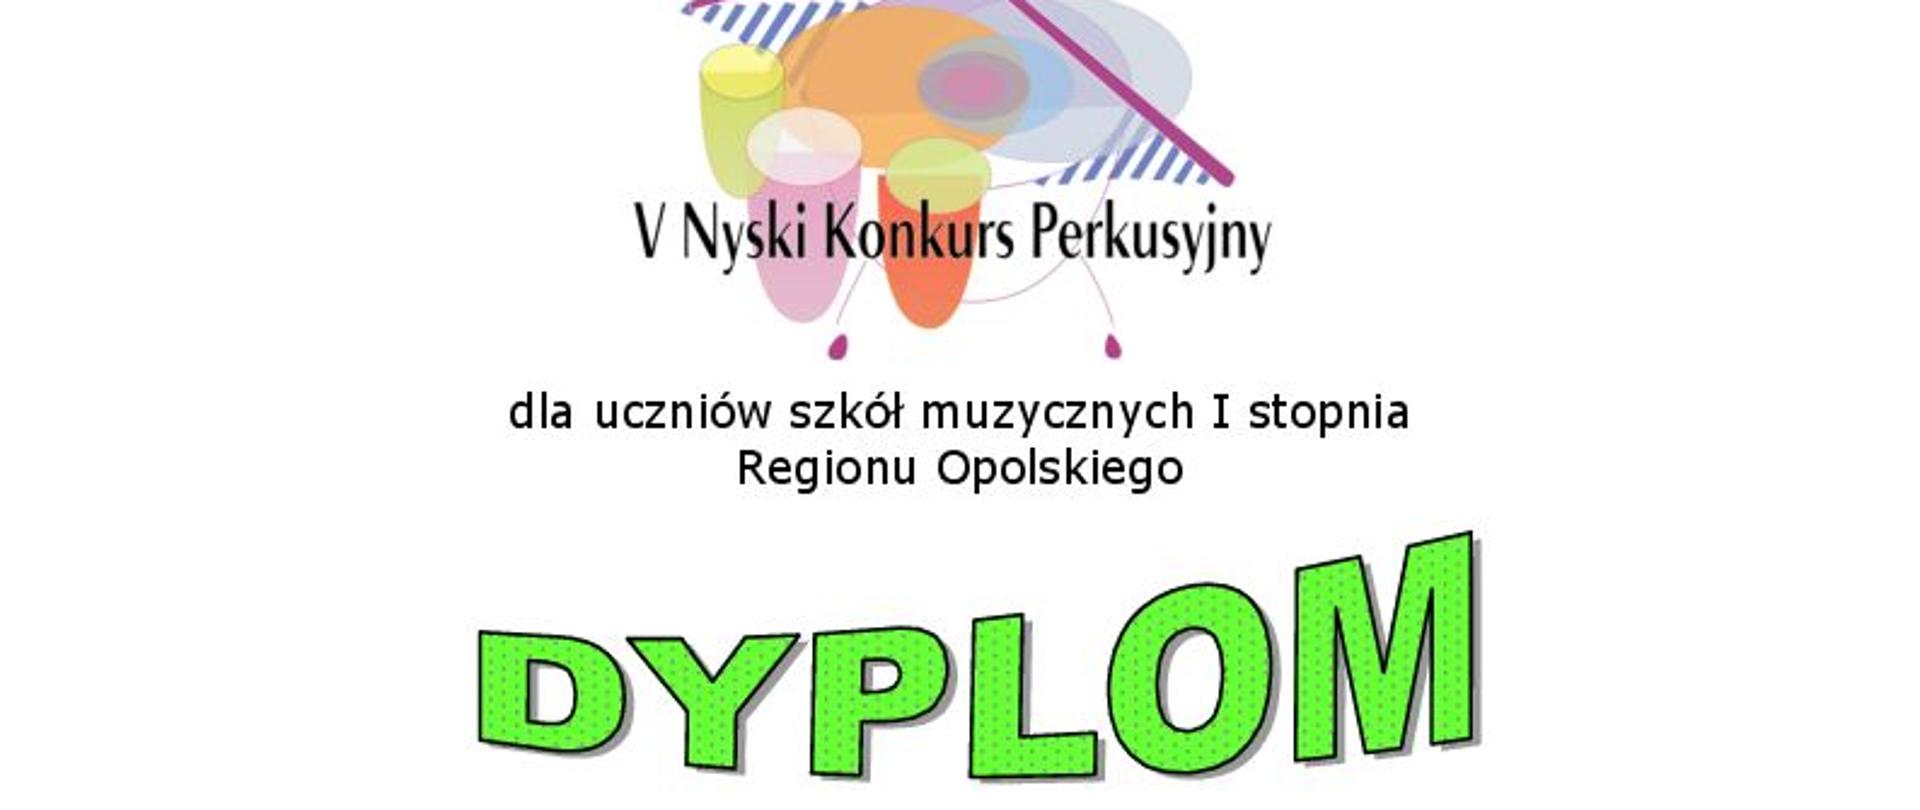 Grafika. Na górze logo Piątego Nyskiego Konkursu Perkusyjnego. Pod spodem napisy: dla uczniów szkół muzycznych regionu opolskiego DYPLOM.